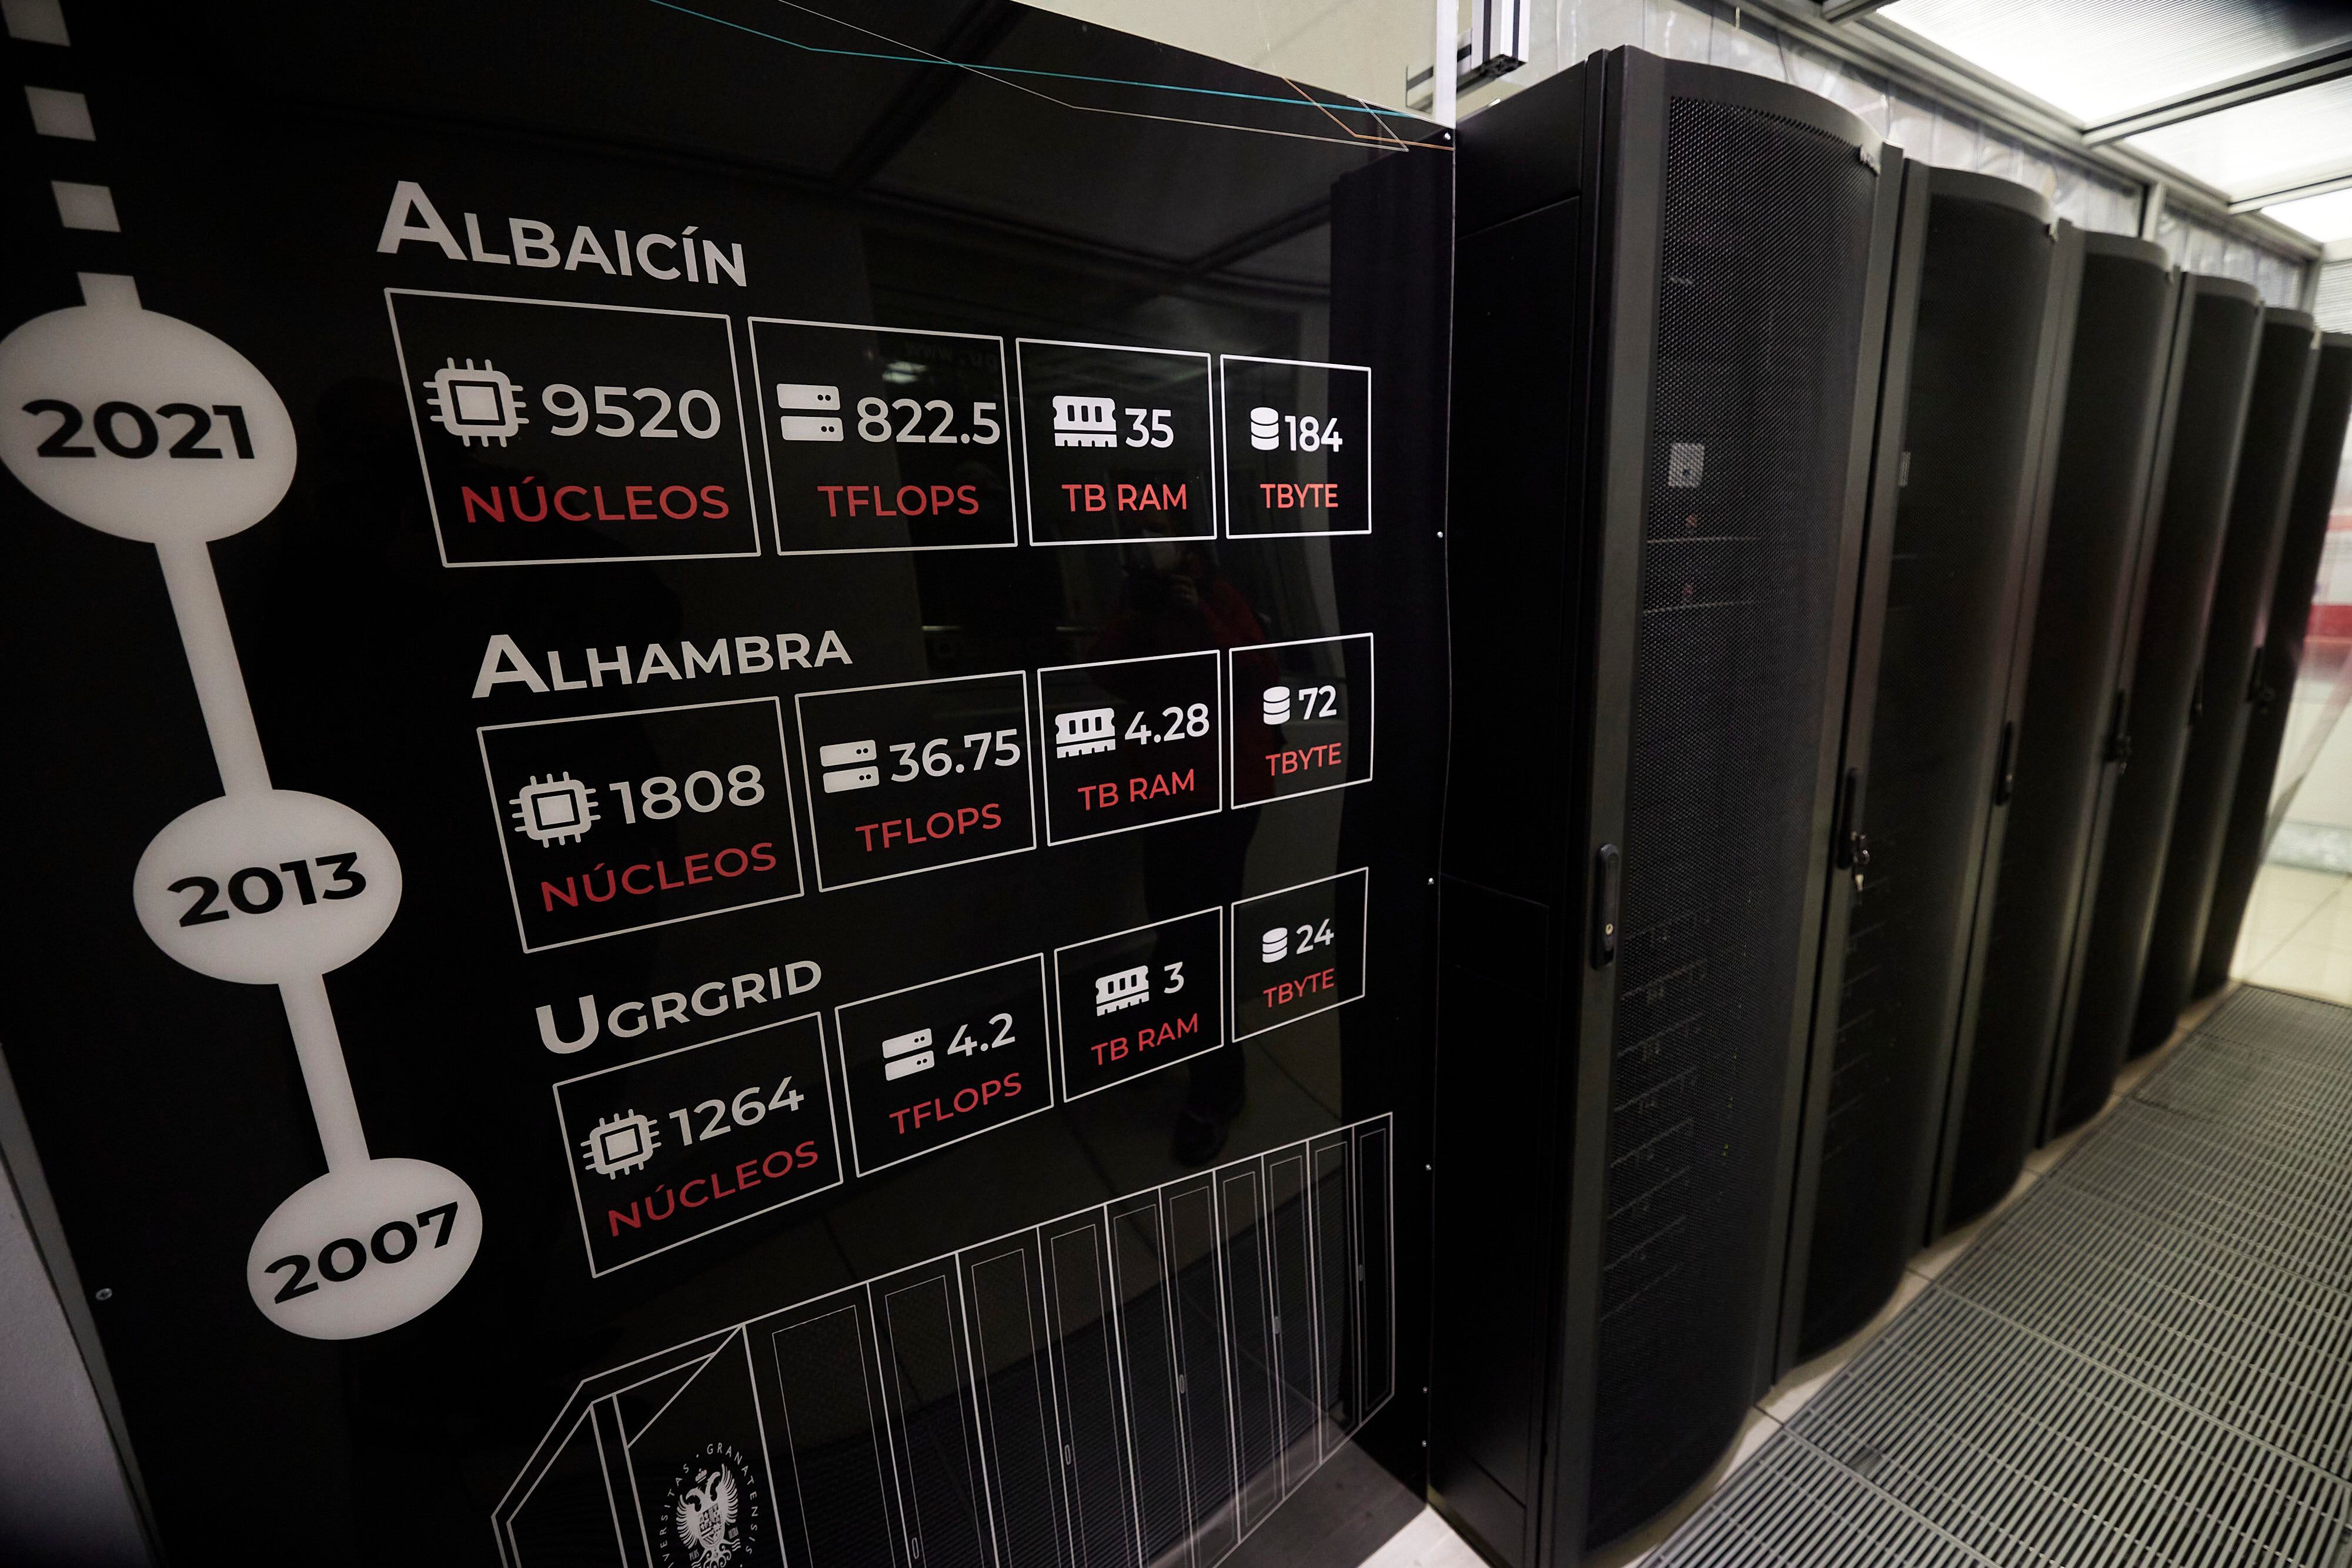 El supercomputador 'Albaicín', con las referencias de las capacidades de los ordenadores previos.